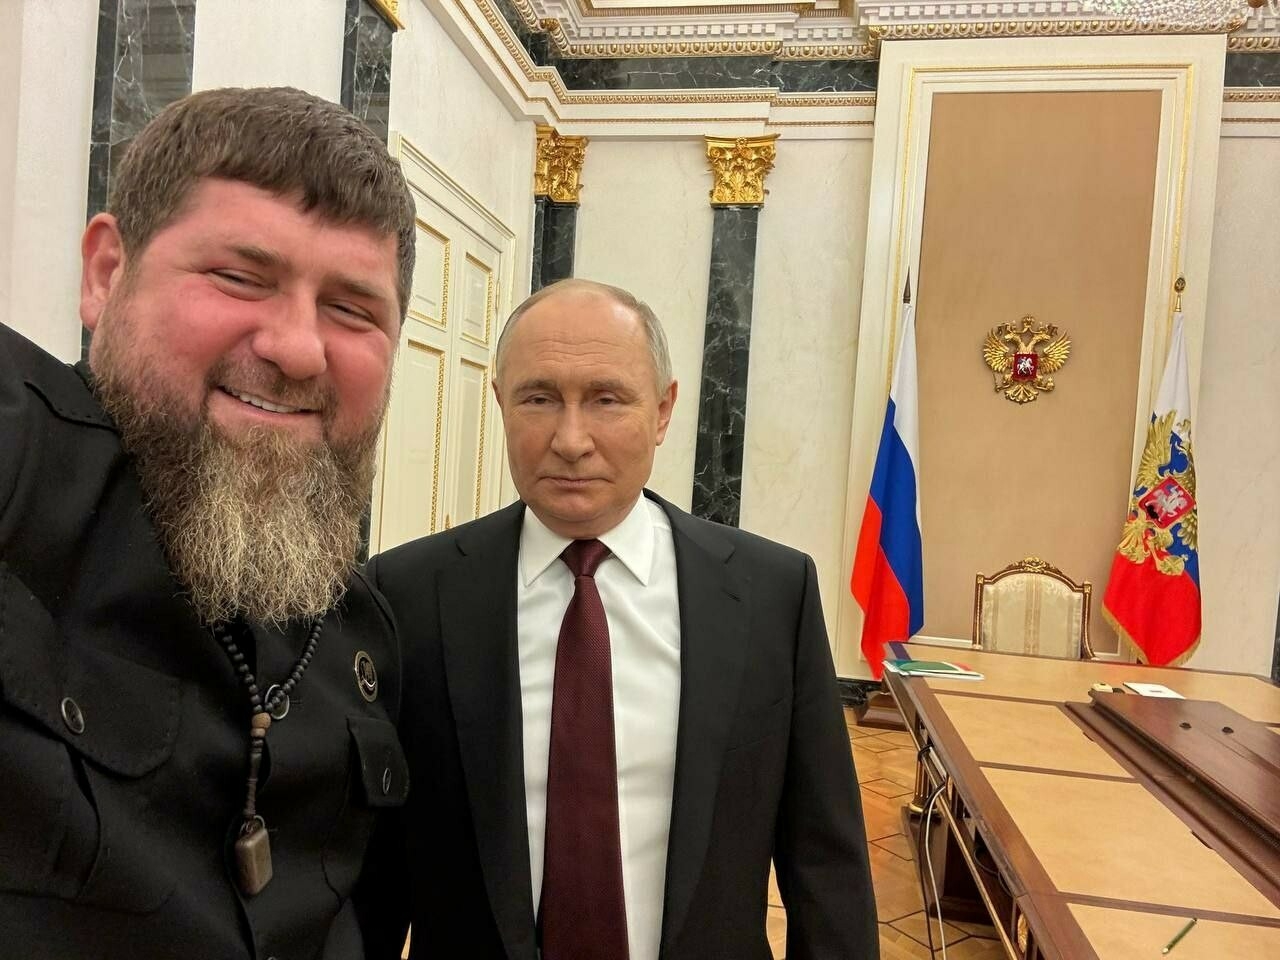 Кадыров опубликовал фото с Путиным в Кремле